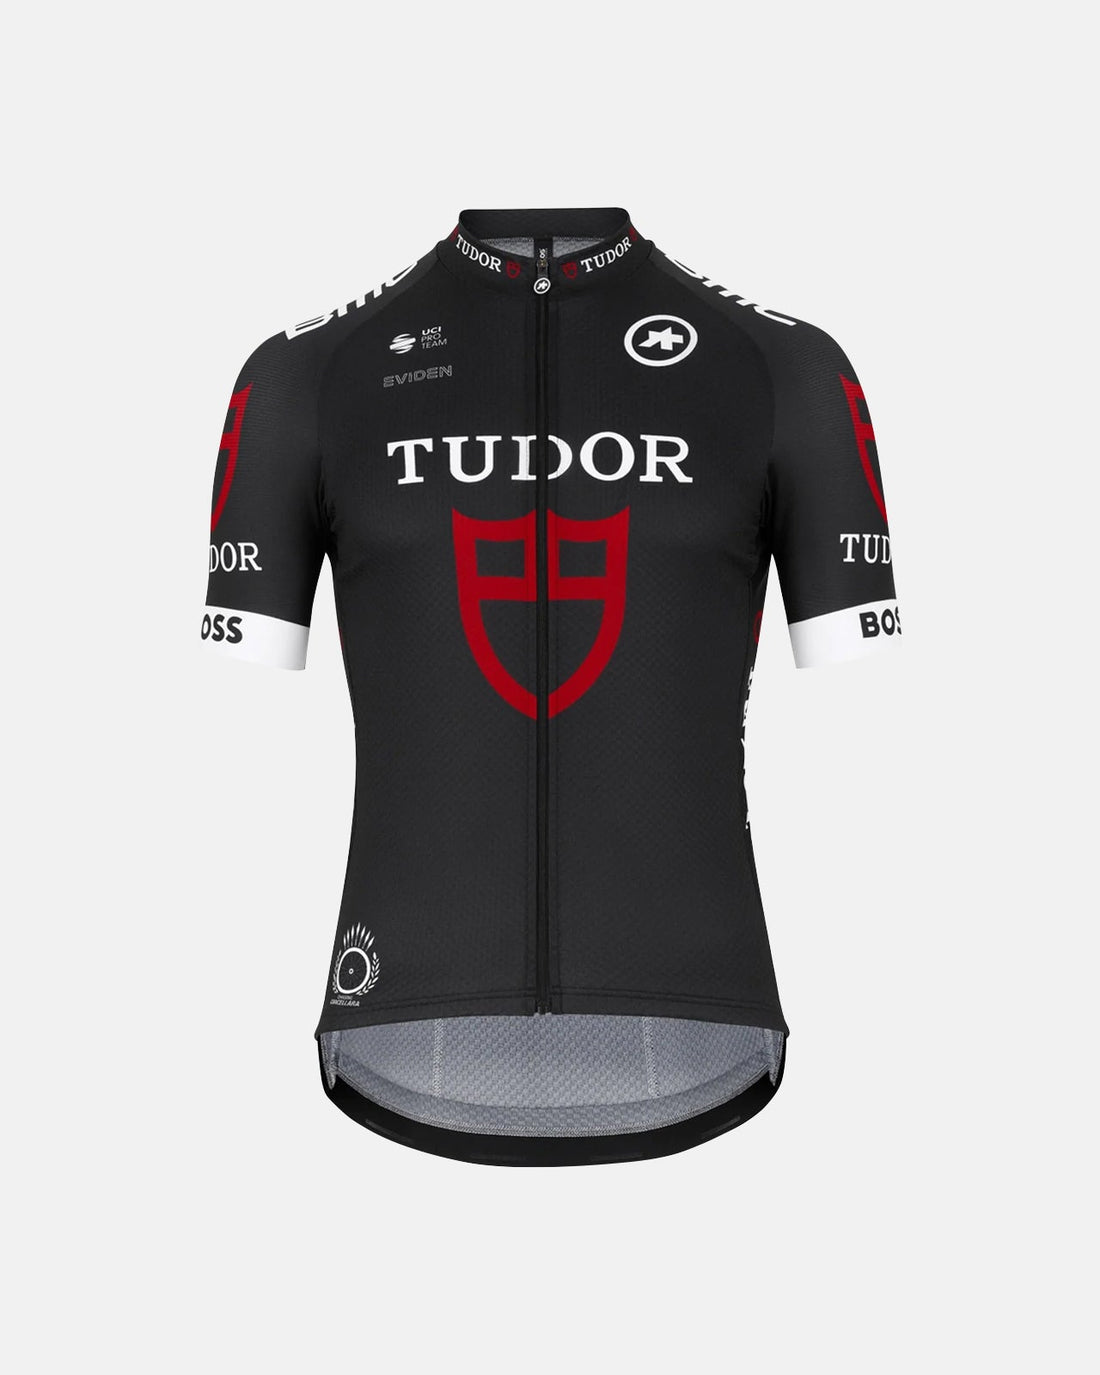 Assos Tudor Pro Cycling Team Replica Jersey